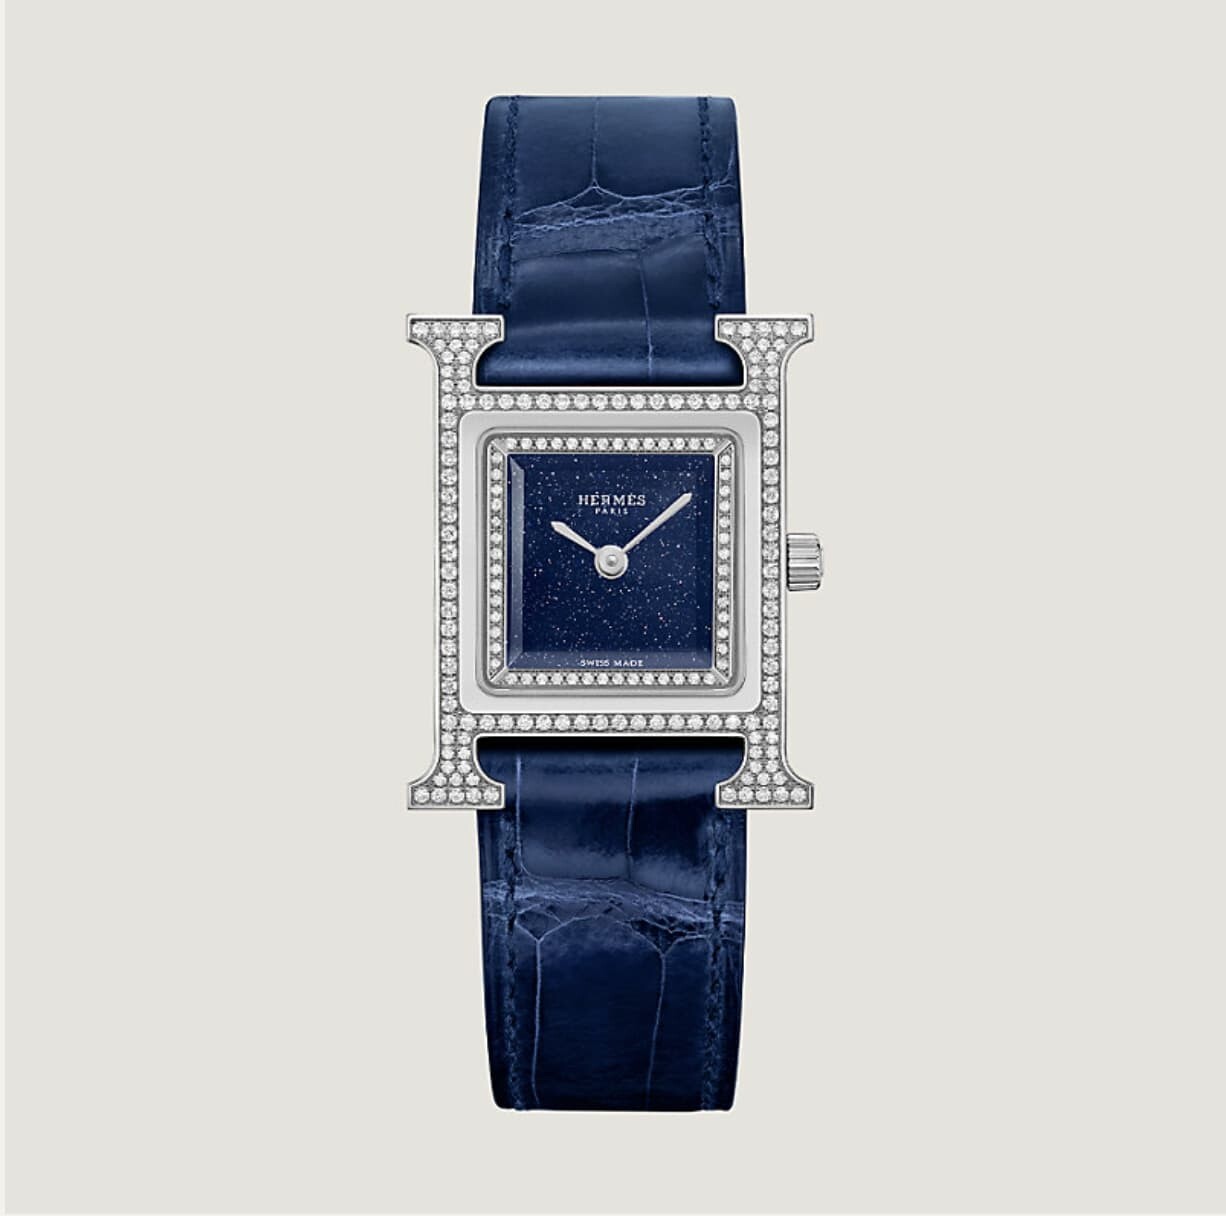 Hermès手錶入門必買款｜$24,100起入手！盤點值得投資的6款愛馬仕腕錶